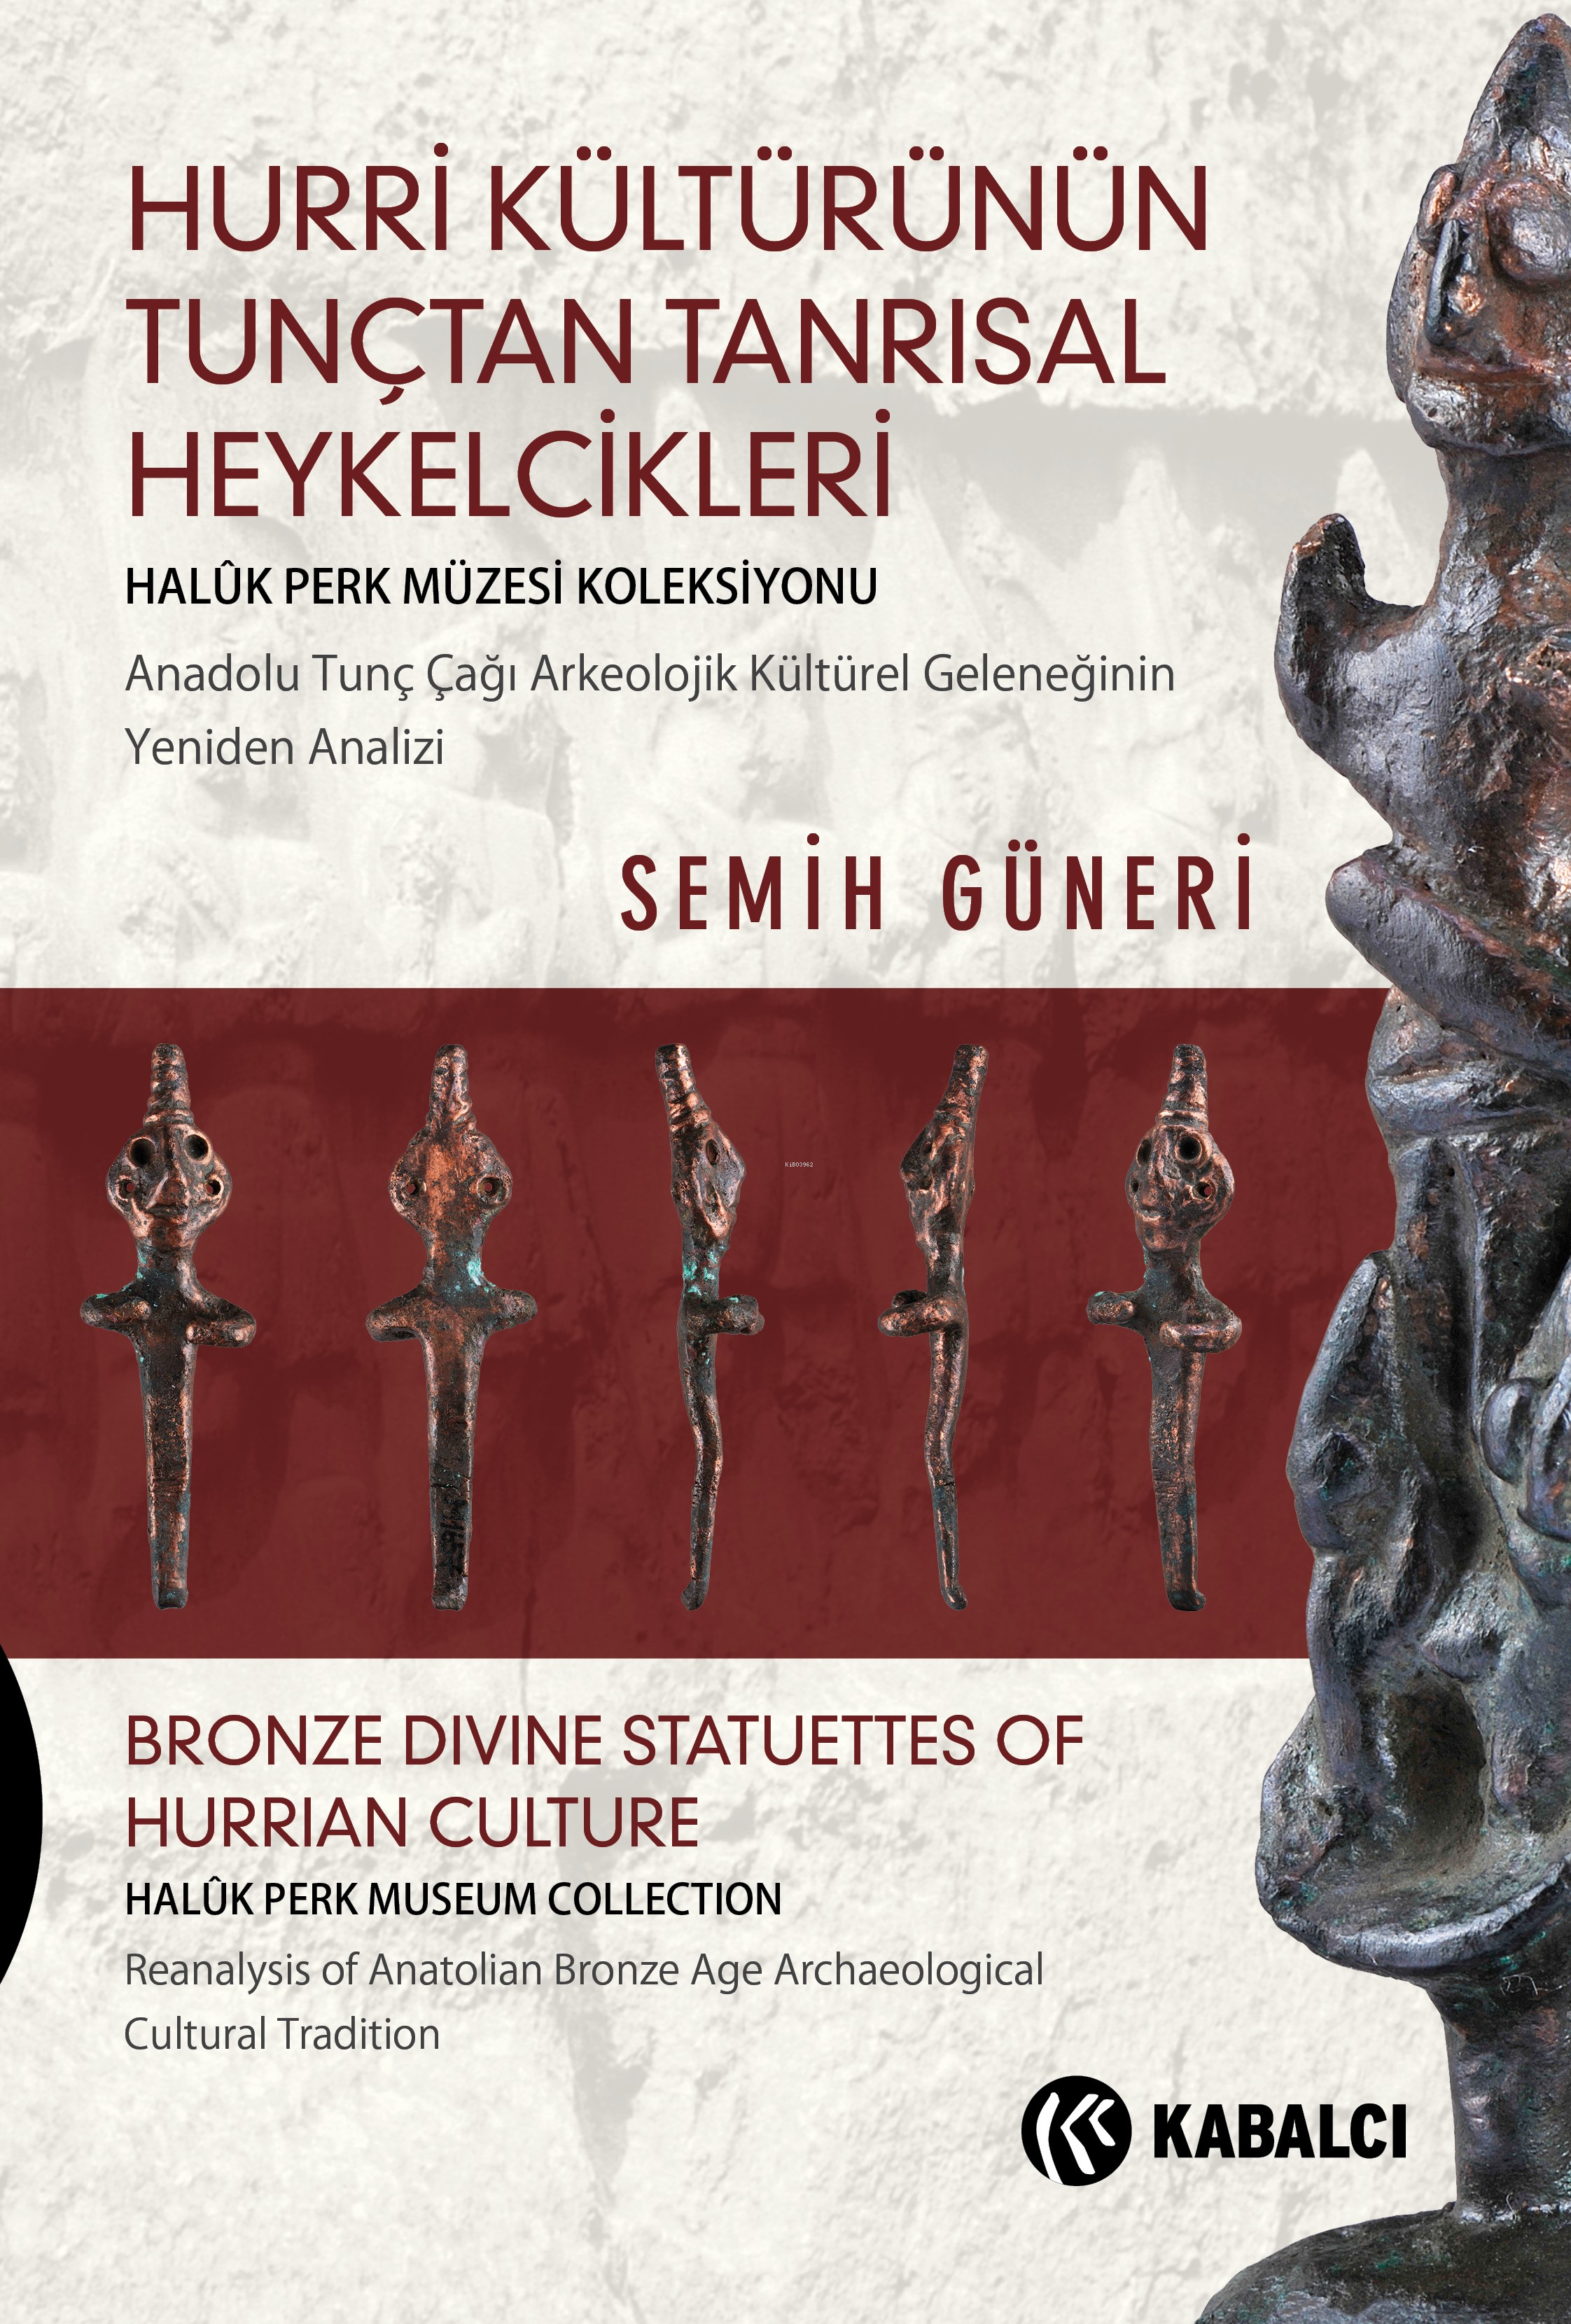 Hurri Kültürünün Tunçtan Tanrısal Heykelcikleri;Anadolu Tunç Çağı Arkeolojik Kültürel Geleneğinin Yeniden Analizi